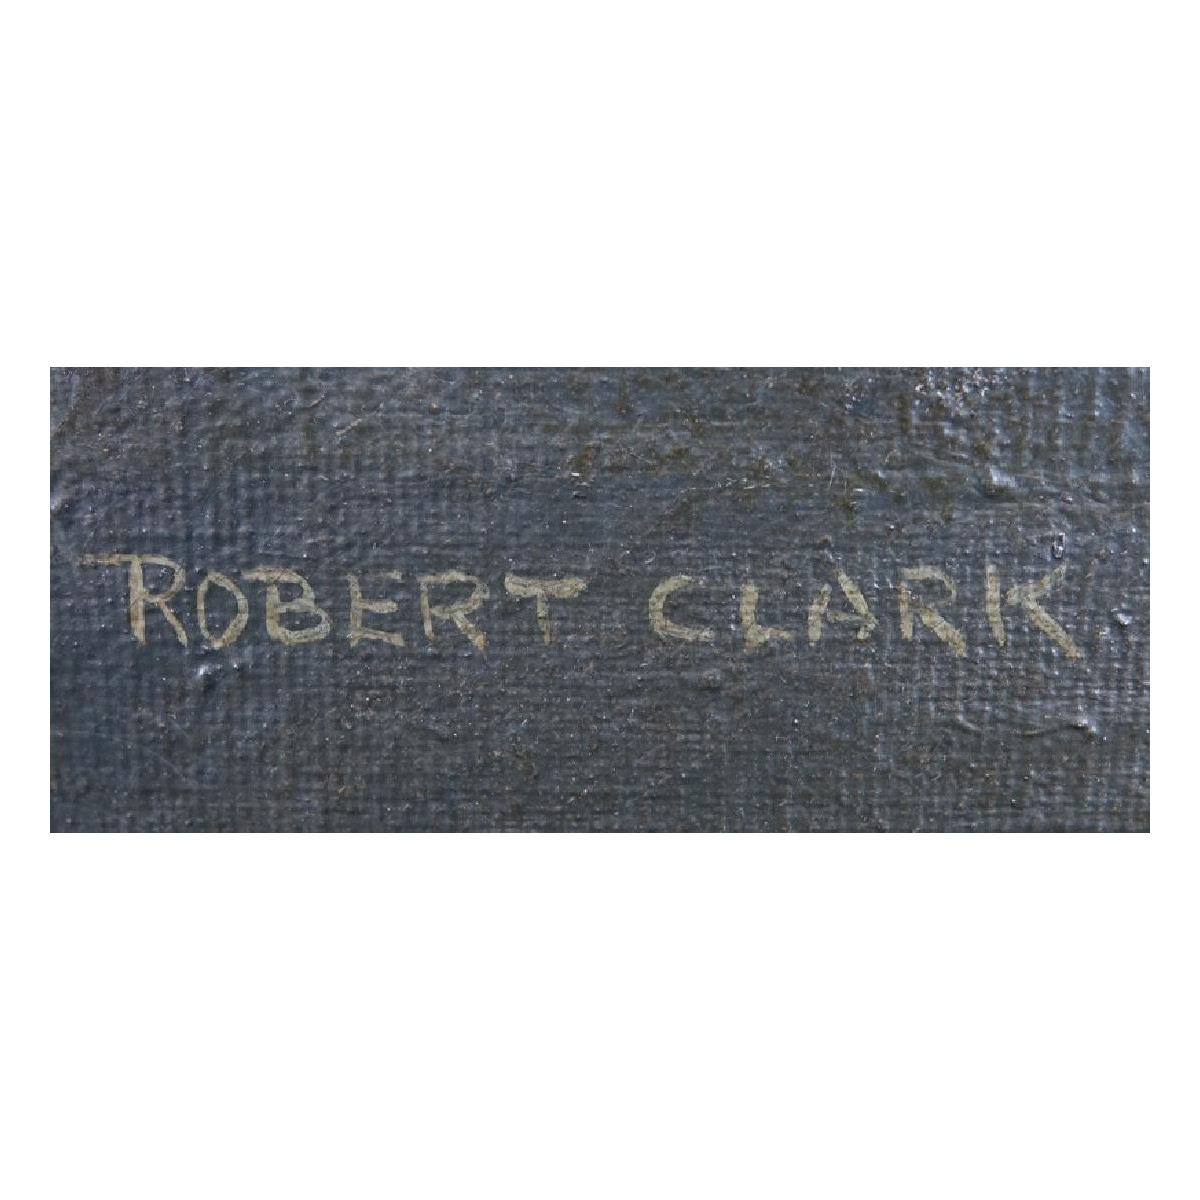 Robert Clark, American (1920-1997)